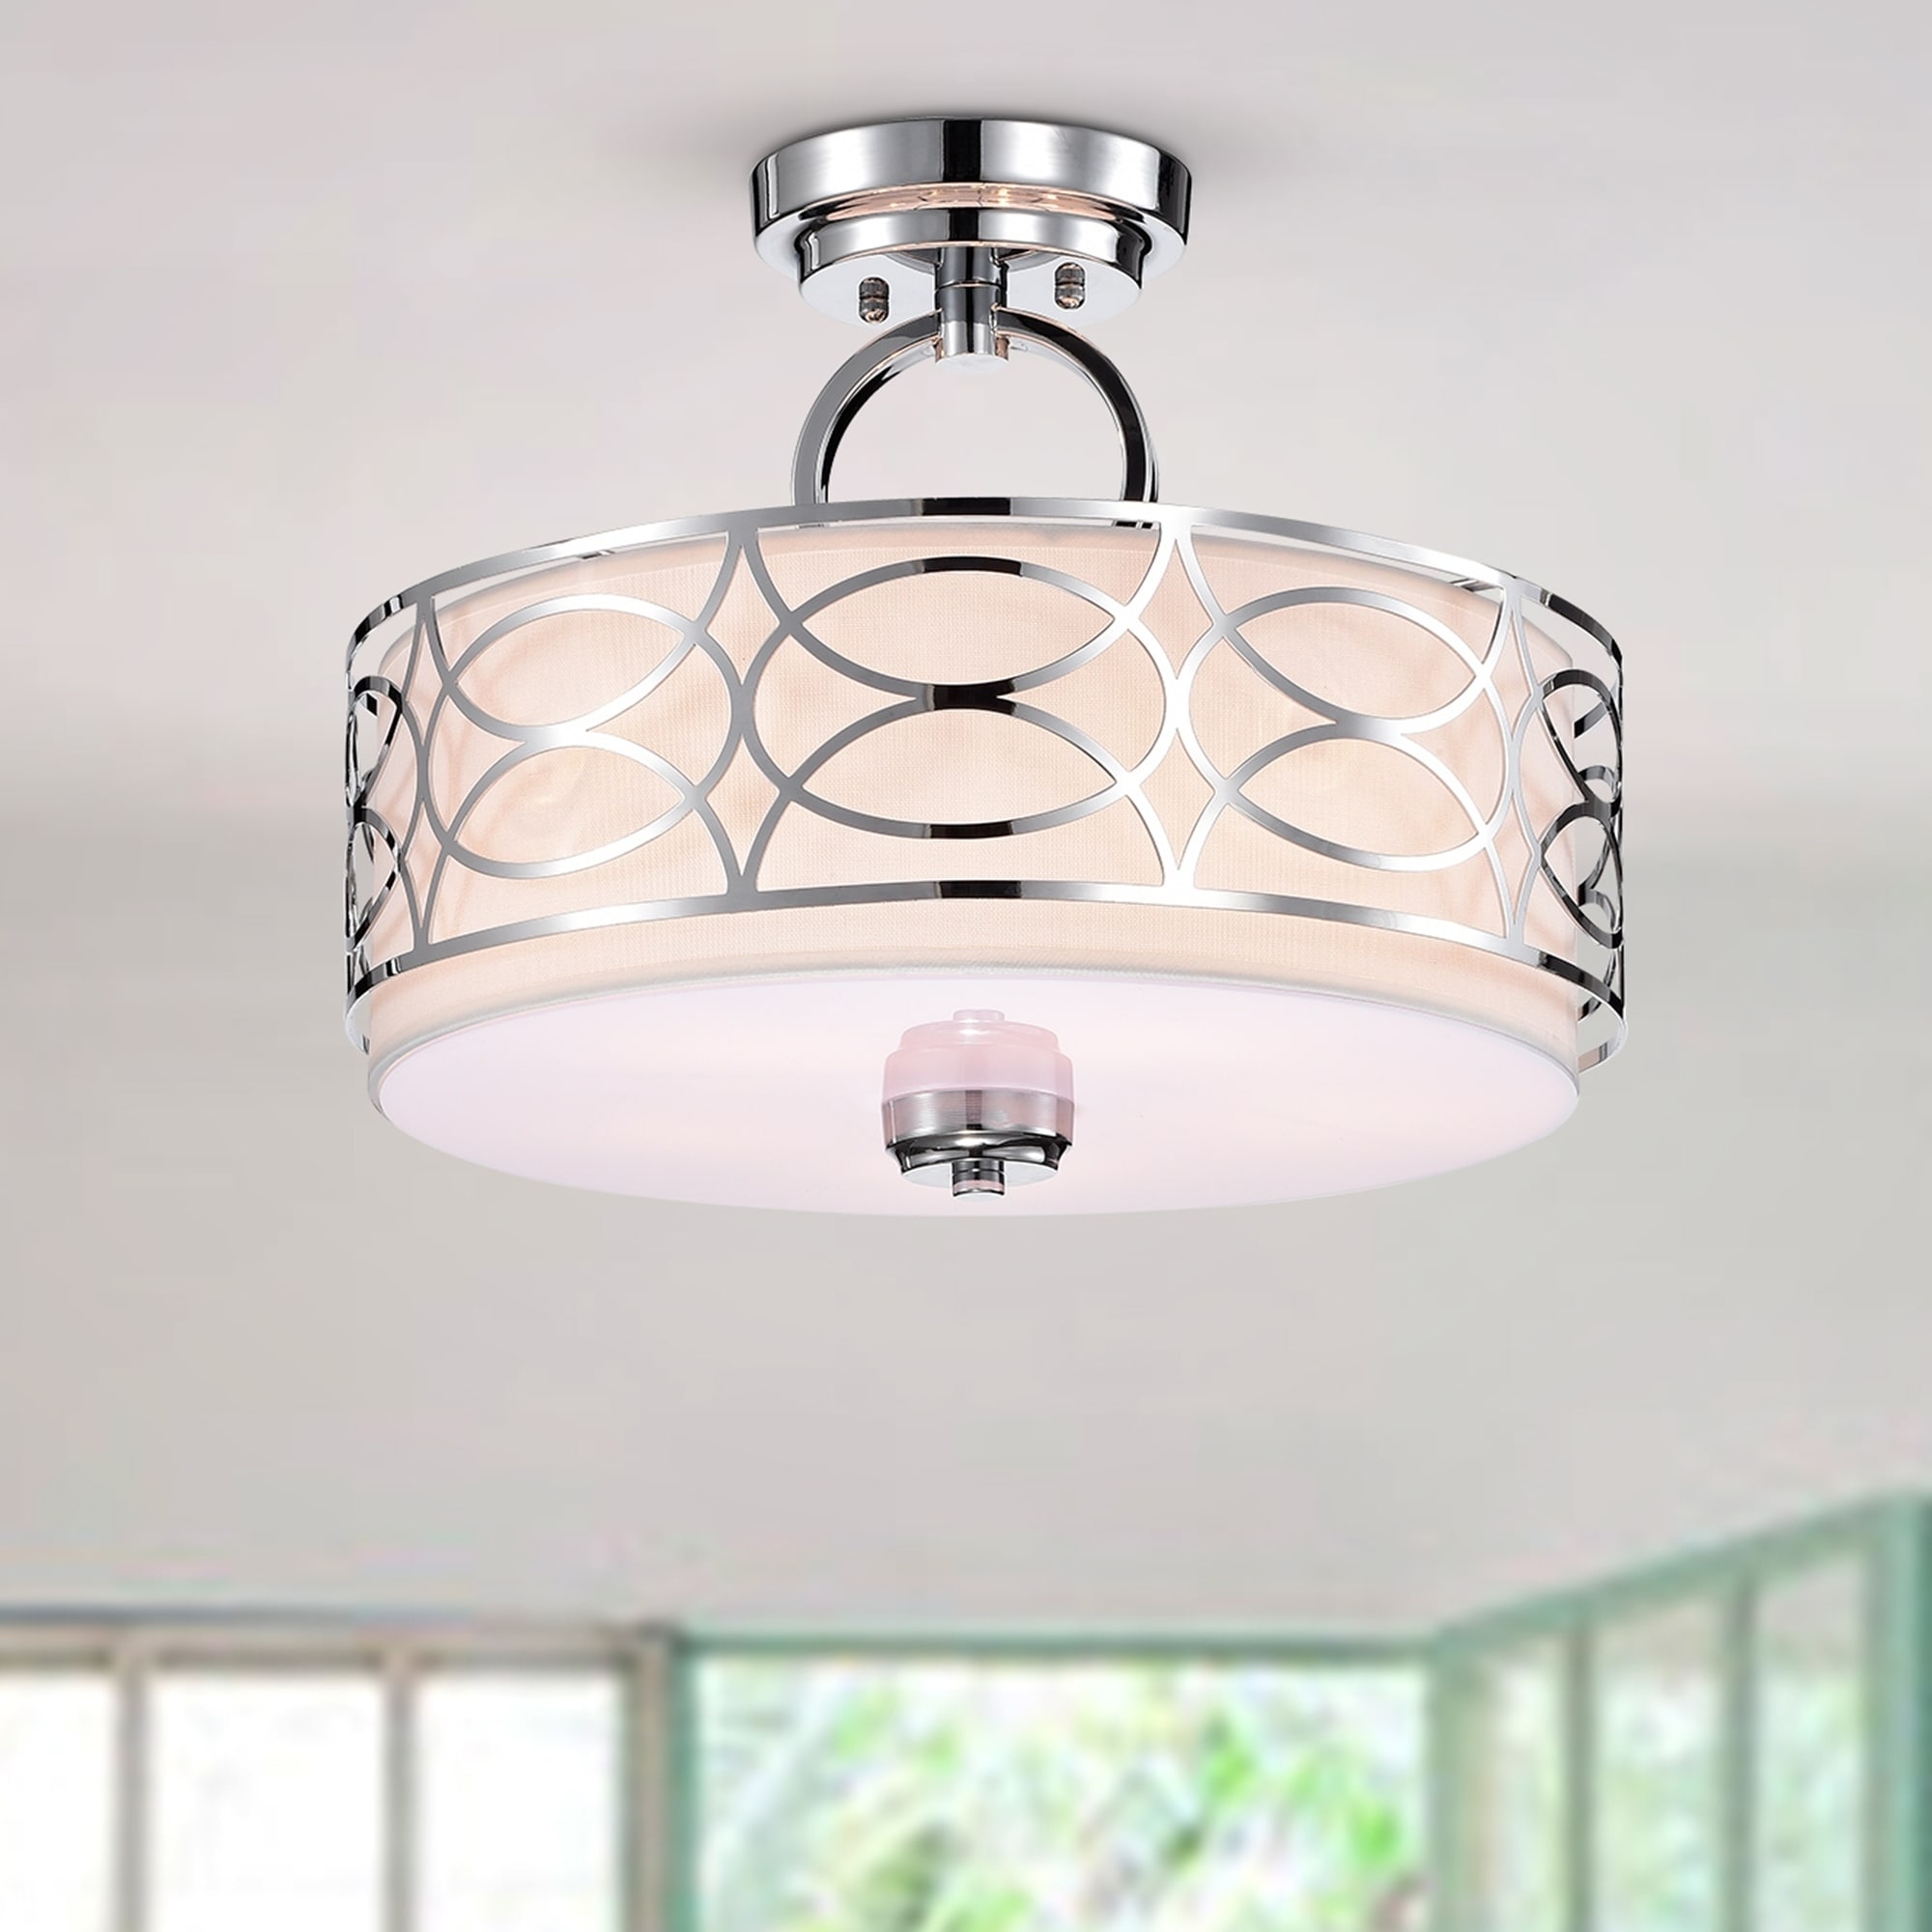 Spennz 5 Light Chrome Design Semi Flush Mount Ceiling Lamp